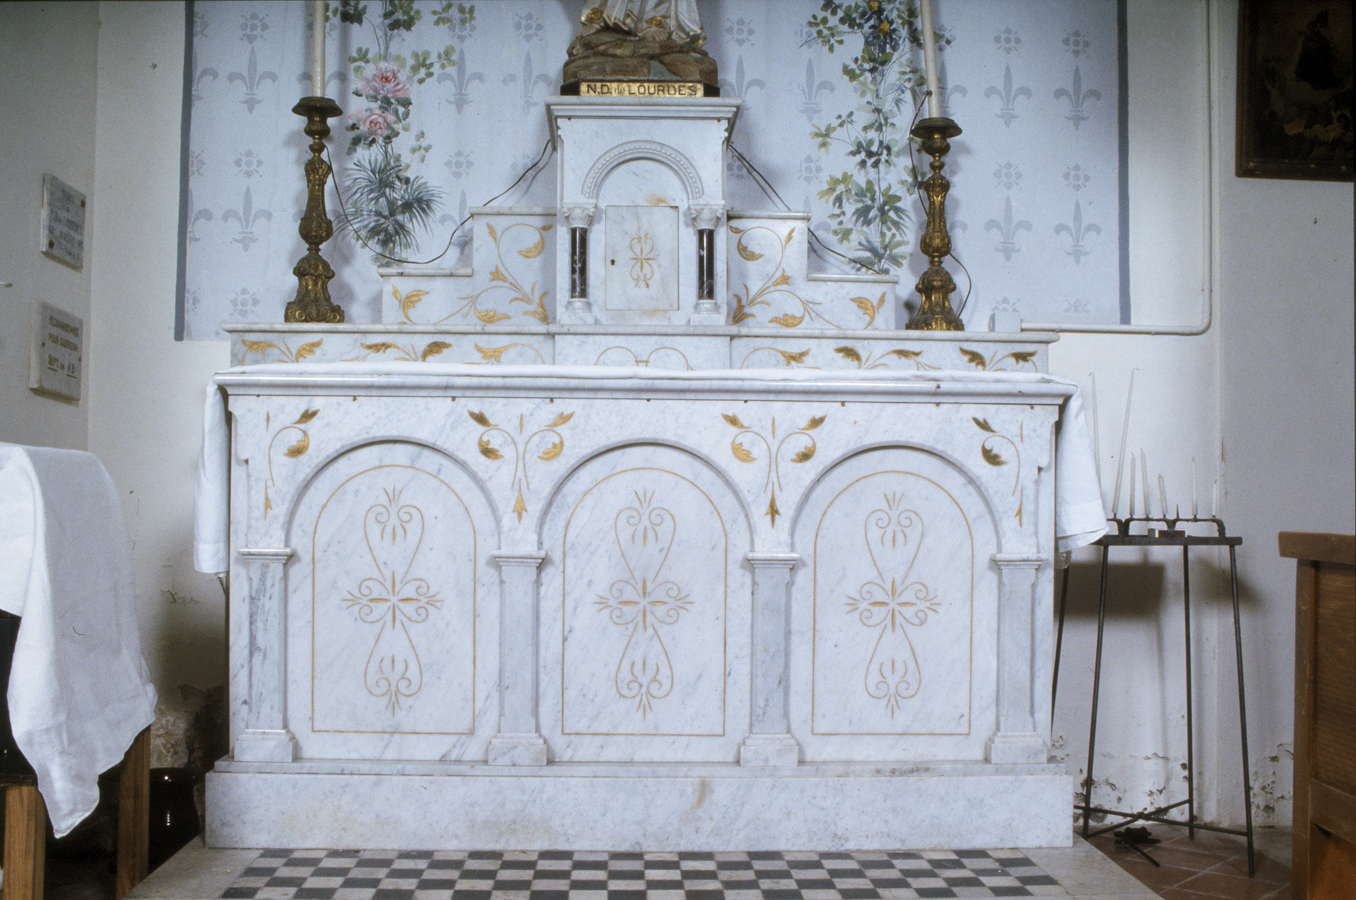 ensemble de la Vierge (autel, gradins d'autel (2), tabernacle, degré d'autel, statue, peinture monumentale)